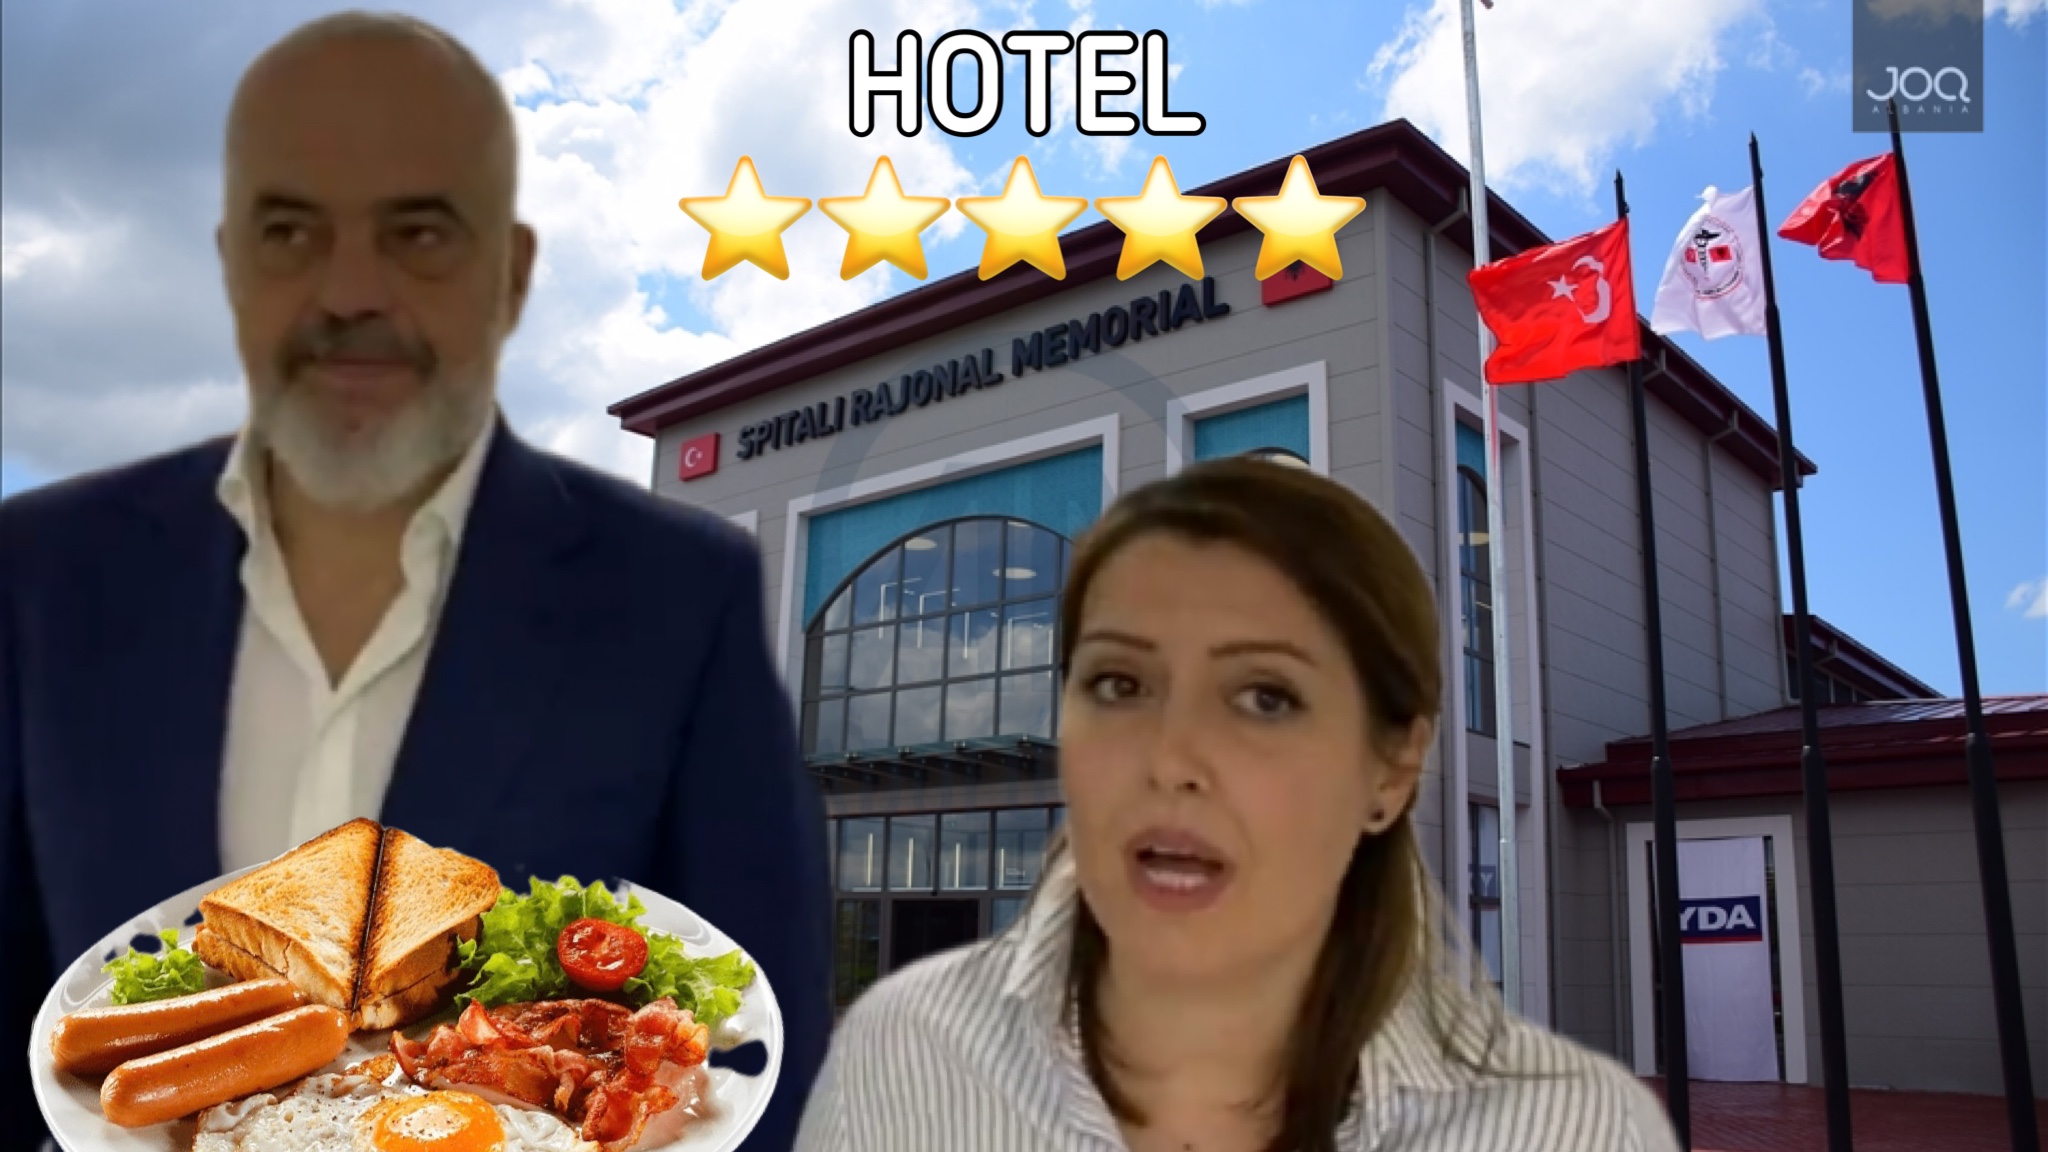 SHQIPTARË, qeveria bën mjekët turq “SULLTANË” me paratë tona! 300 MLN Lekë hoteli me mëngjes